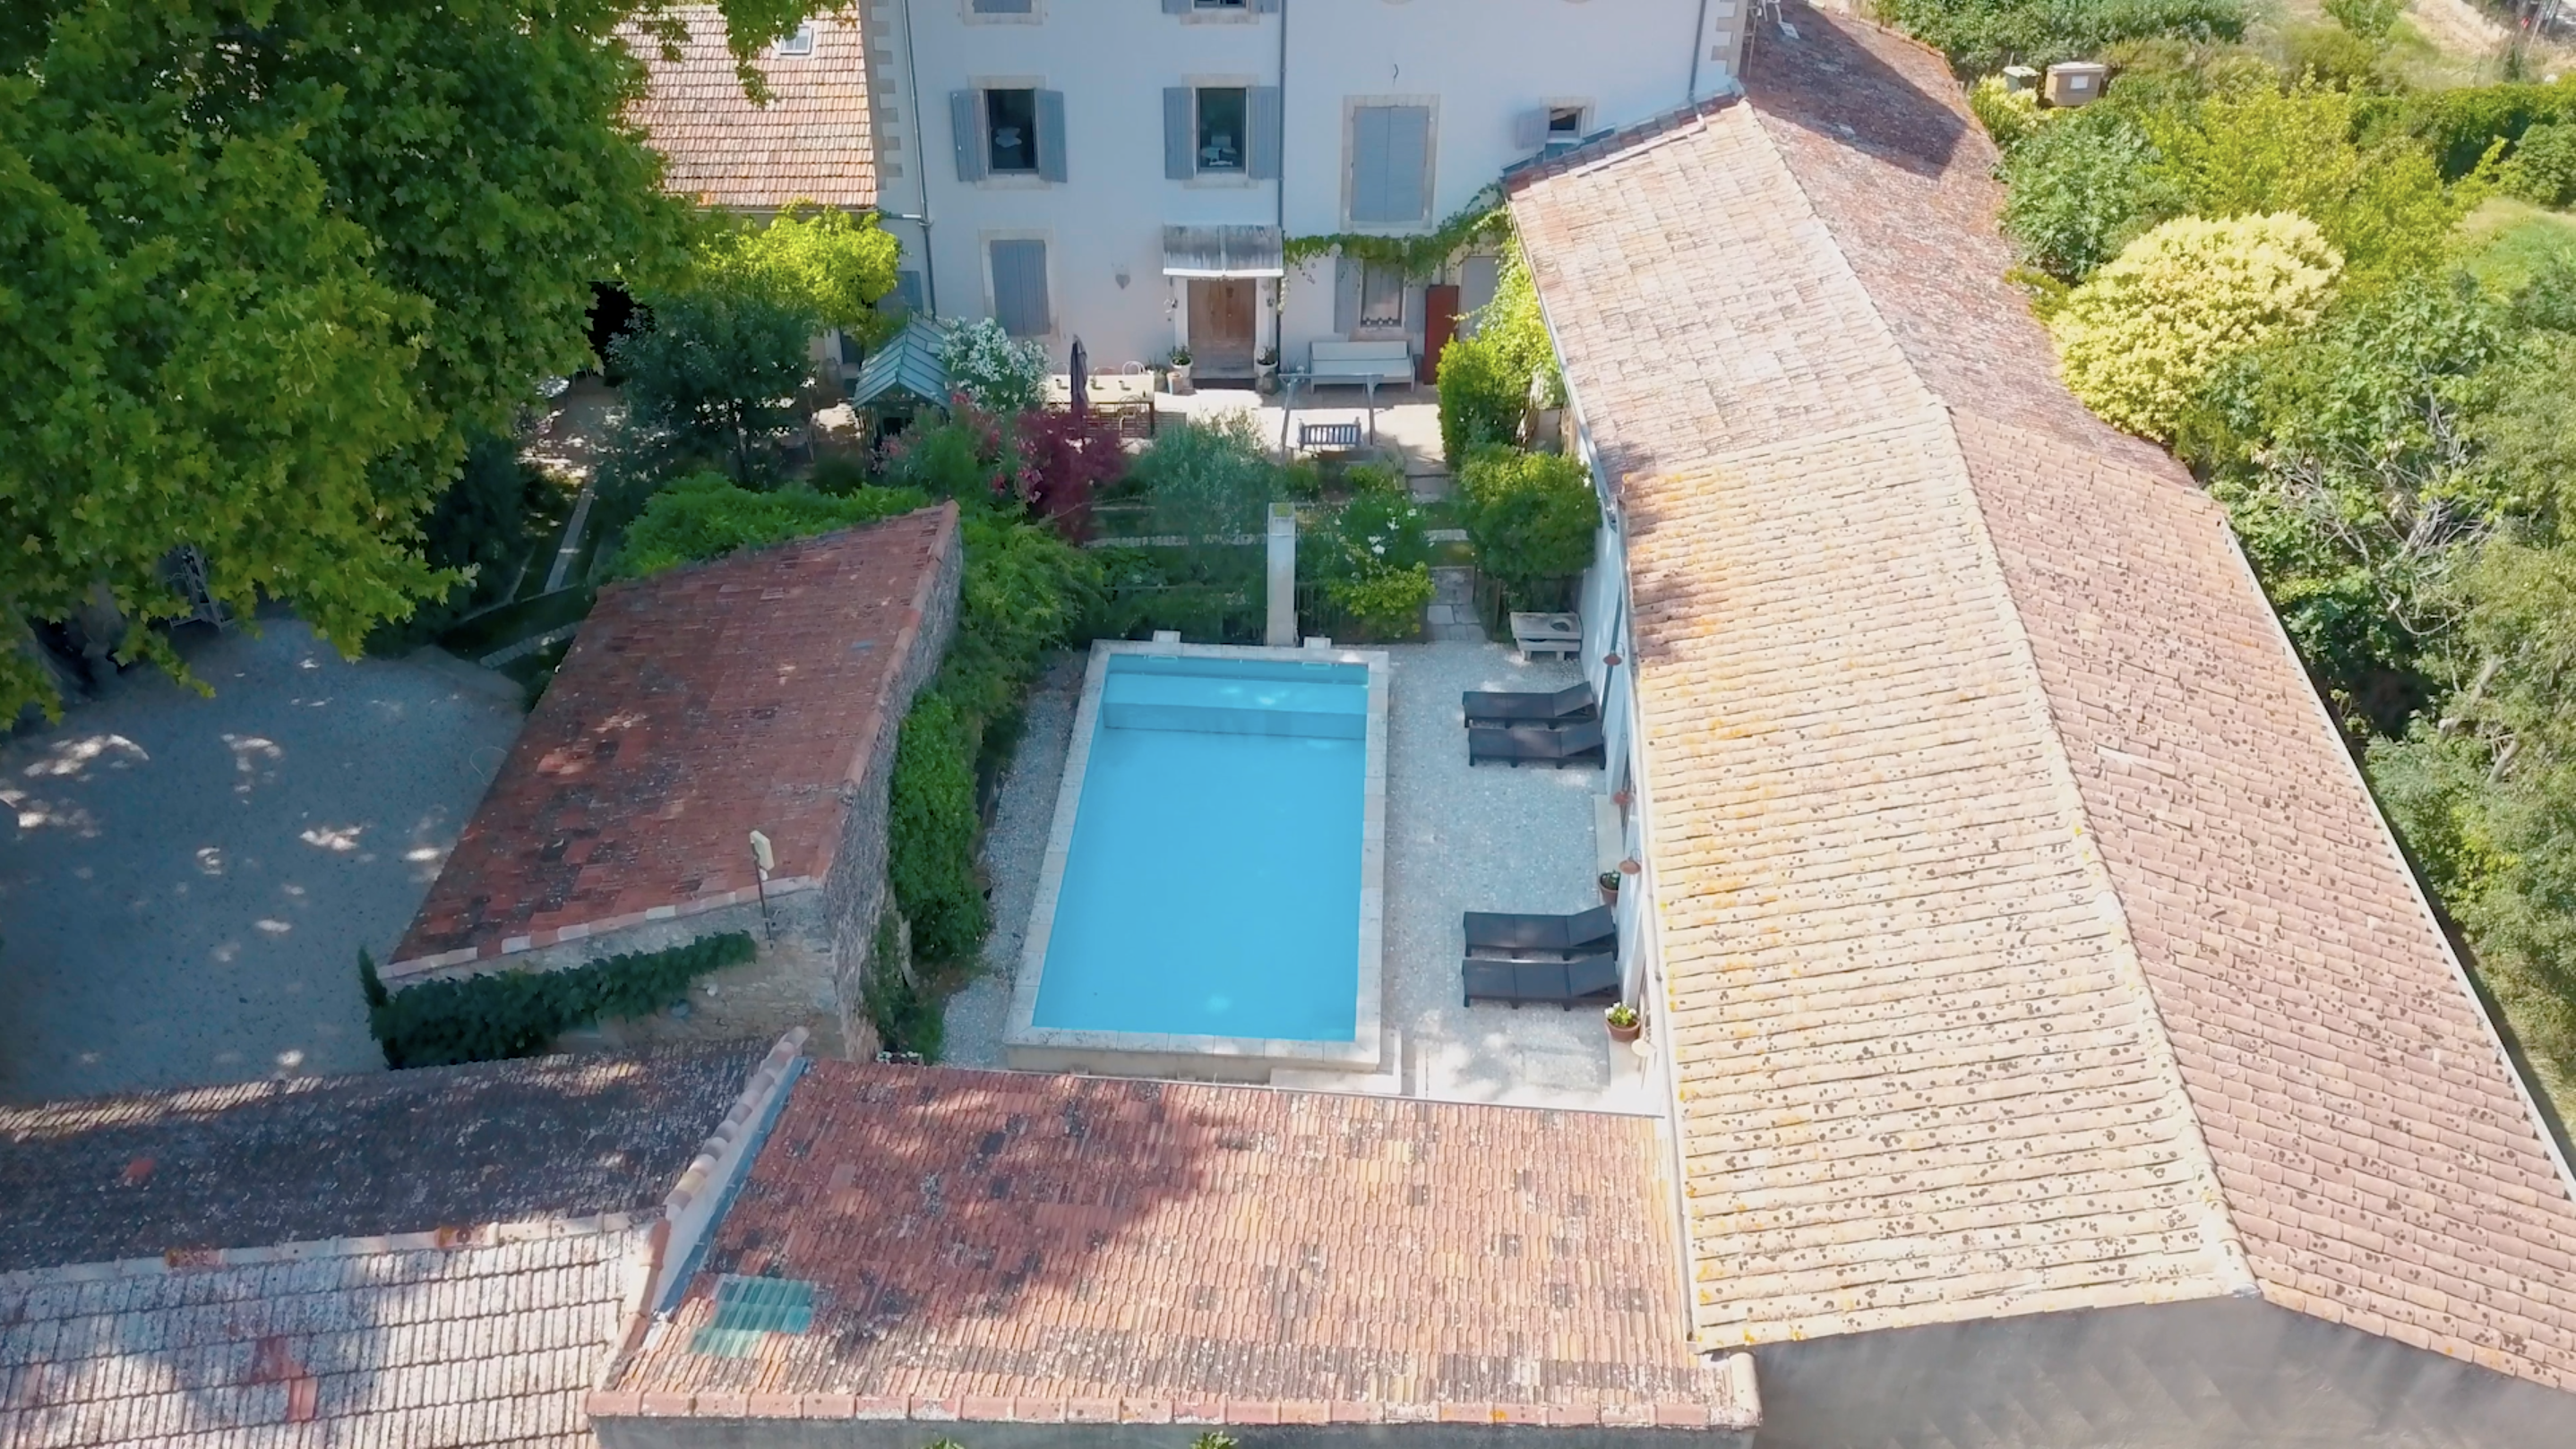 la bastide des songes - chambre hotes - luberon - provence - gordes - roussillon - isle sur sorgue - vue drone piscine et façade